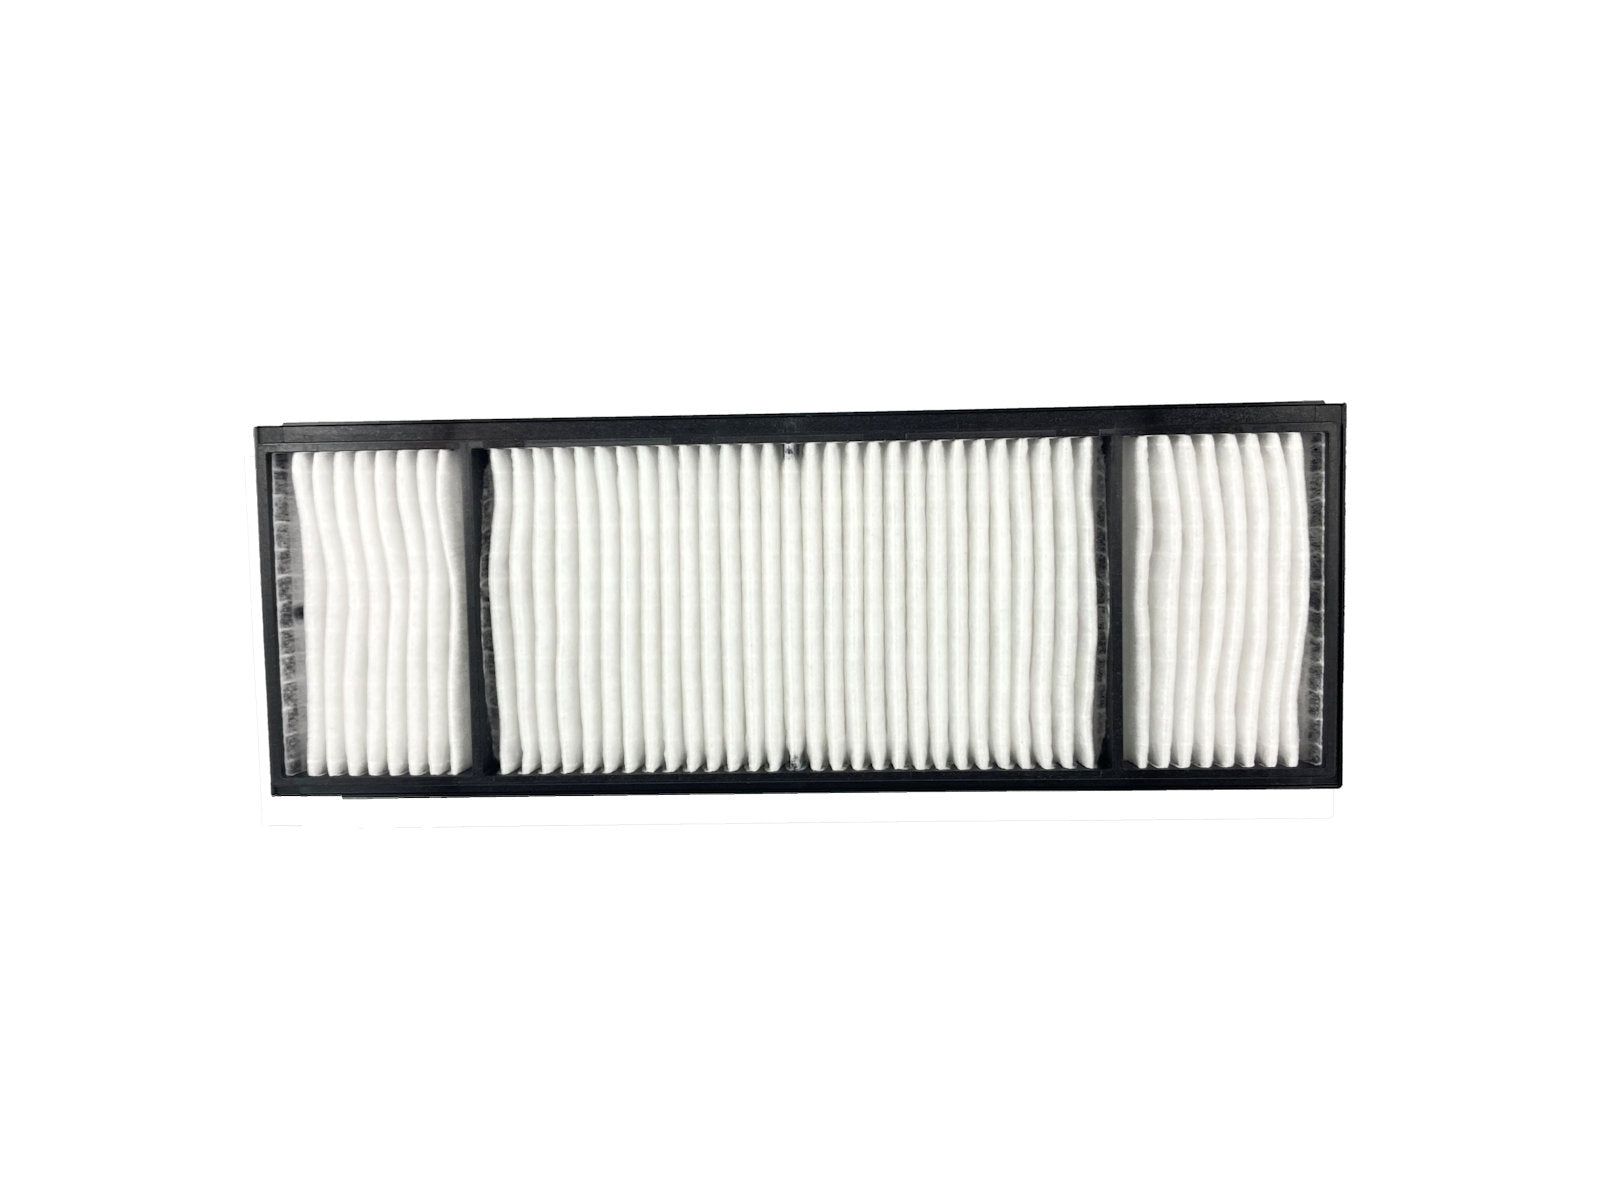 EPSON air filter ELPAF60, V13H134A60 - Bild 1